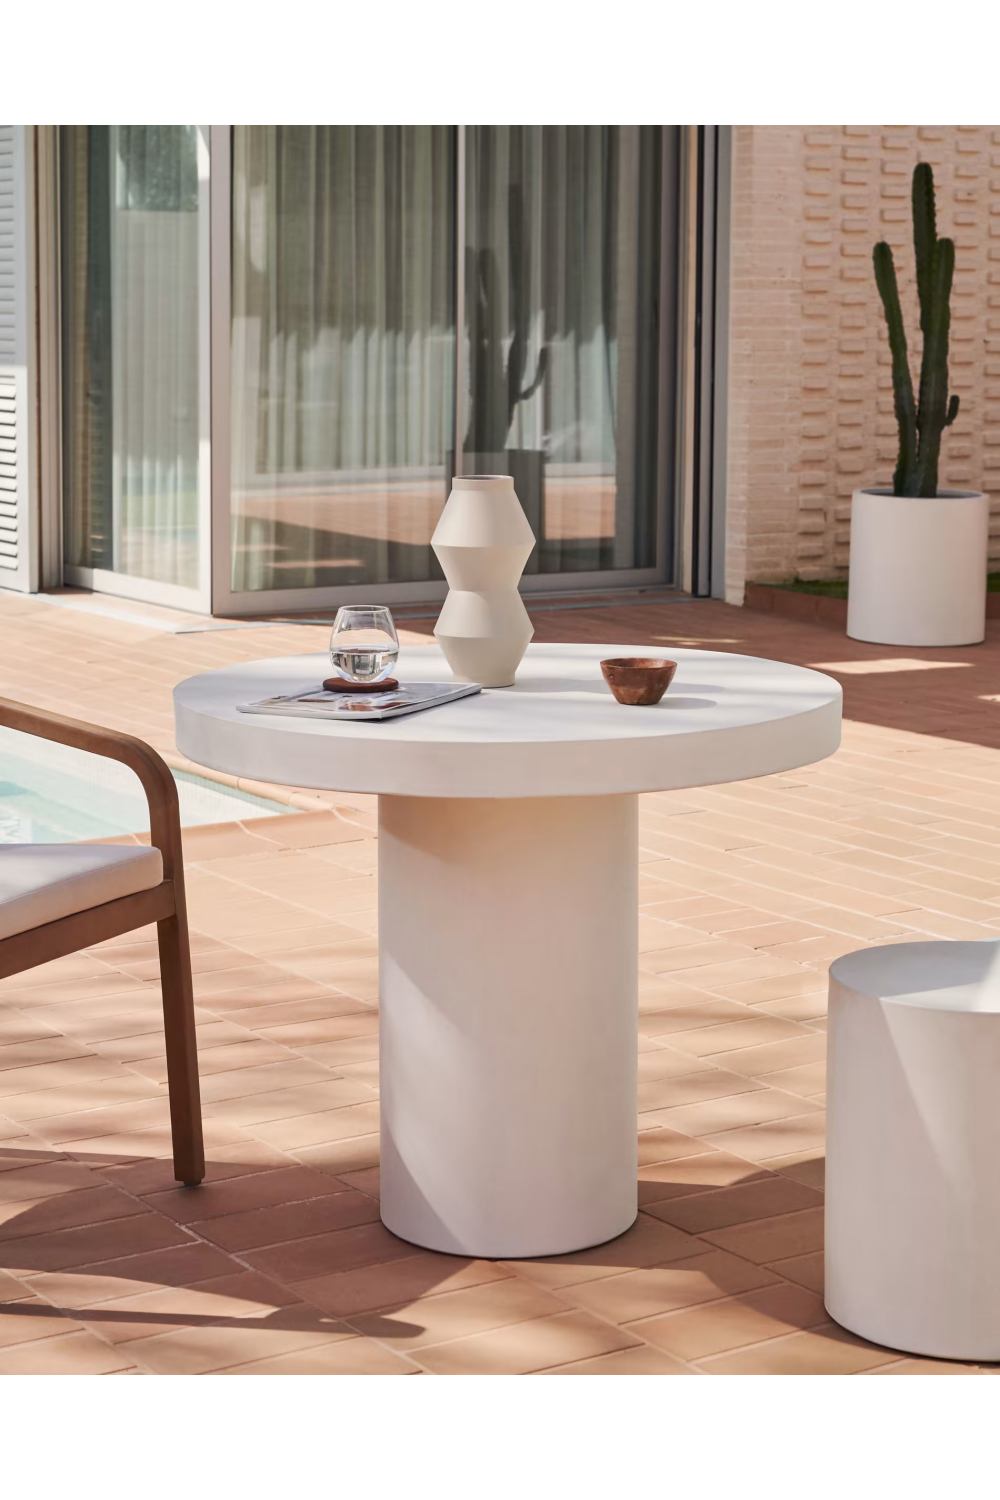 White Cement Round Table | La Forma Aiguablava | Woodfurniture.com